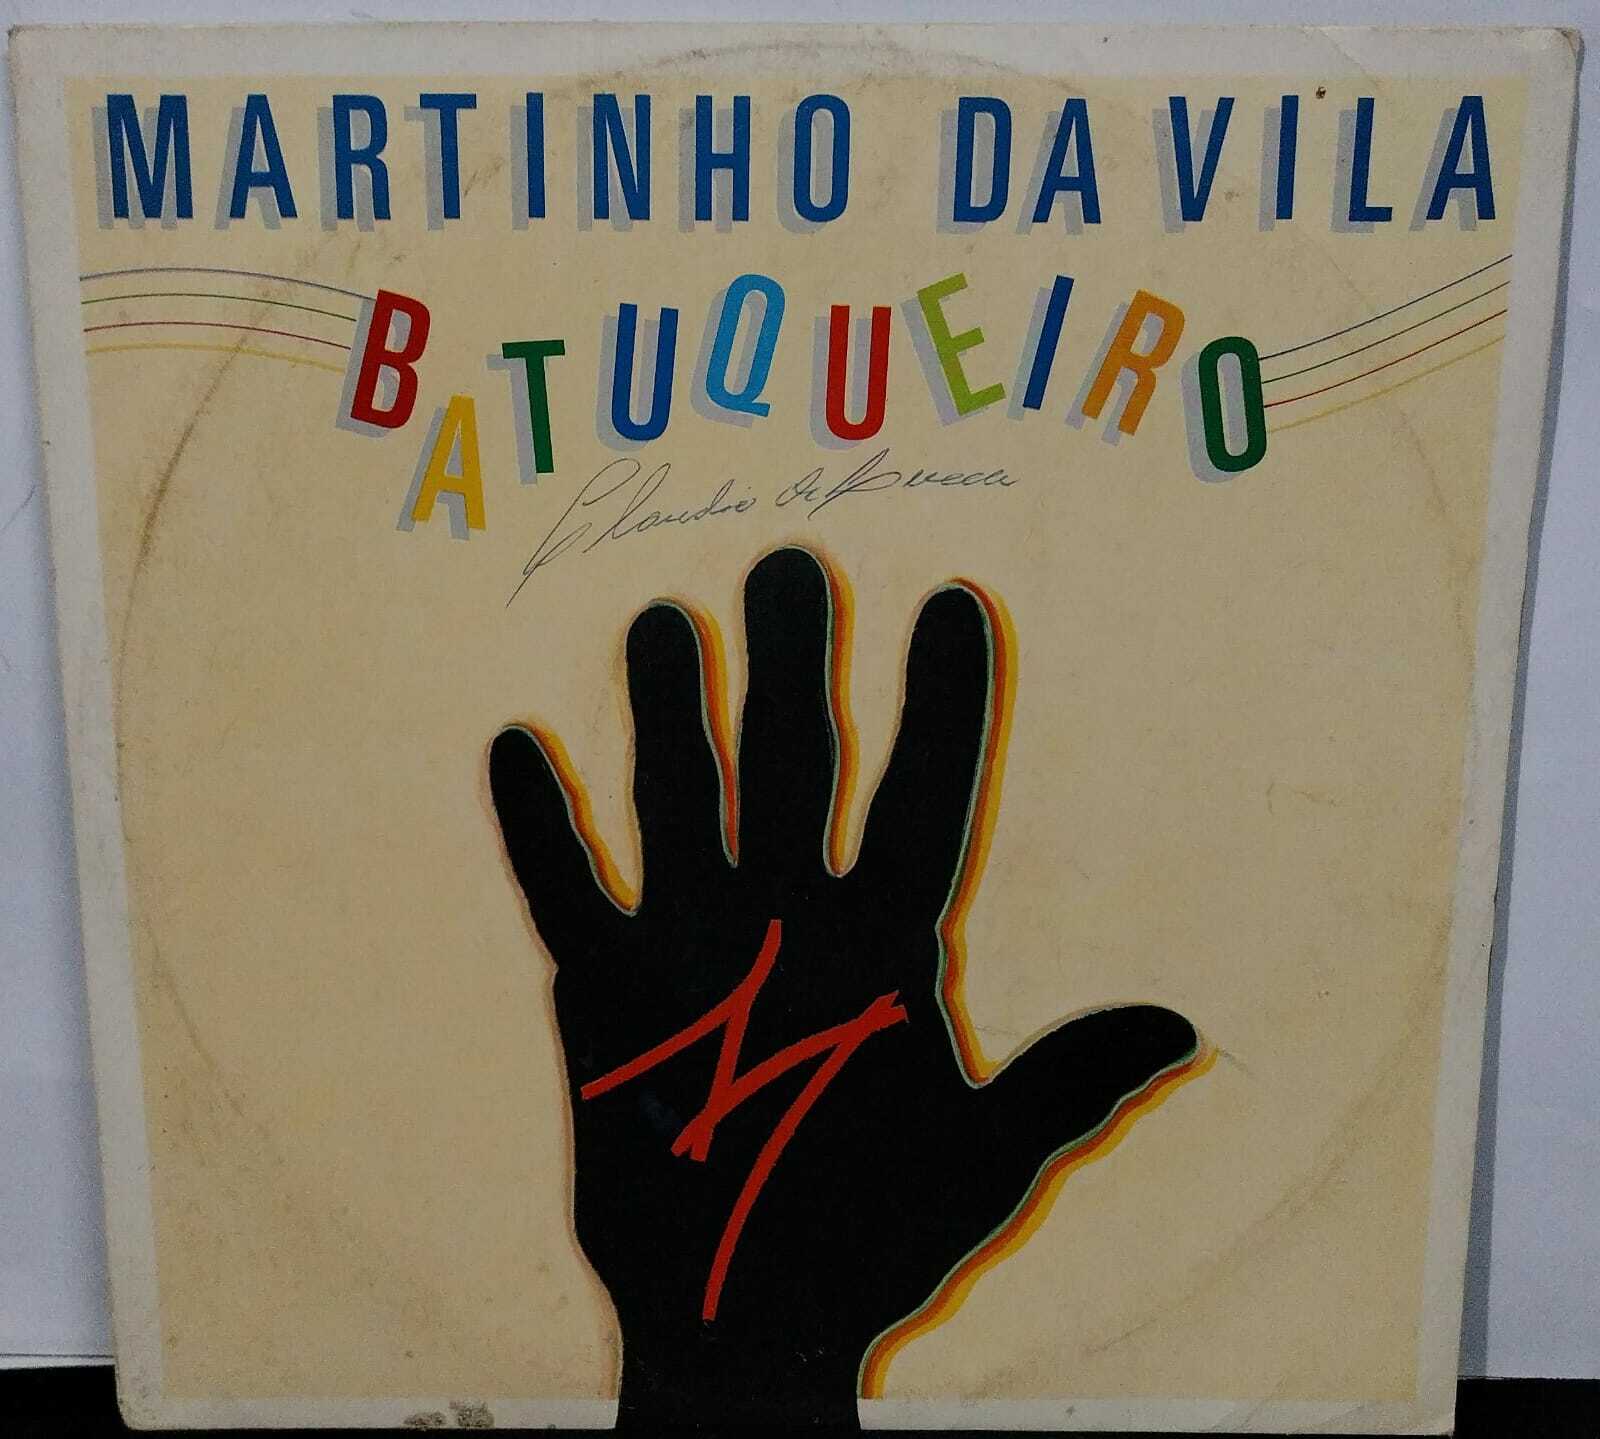 Vinil - Martinho da Vila - Batuqueiro